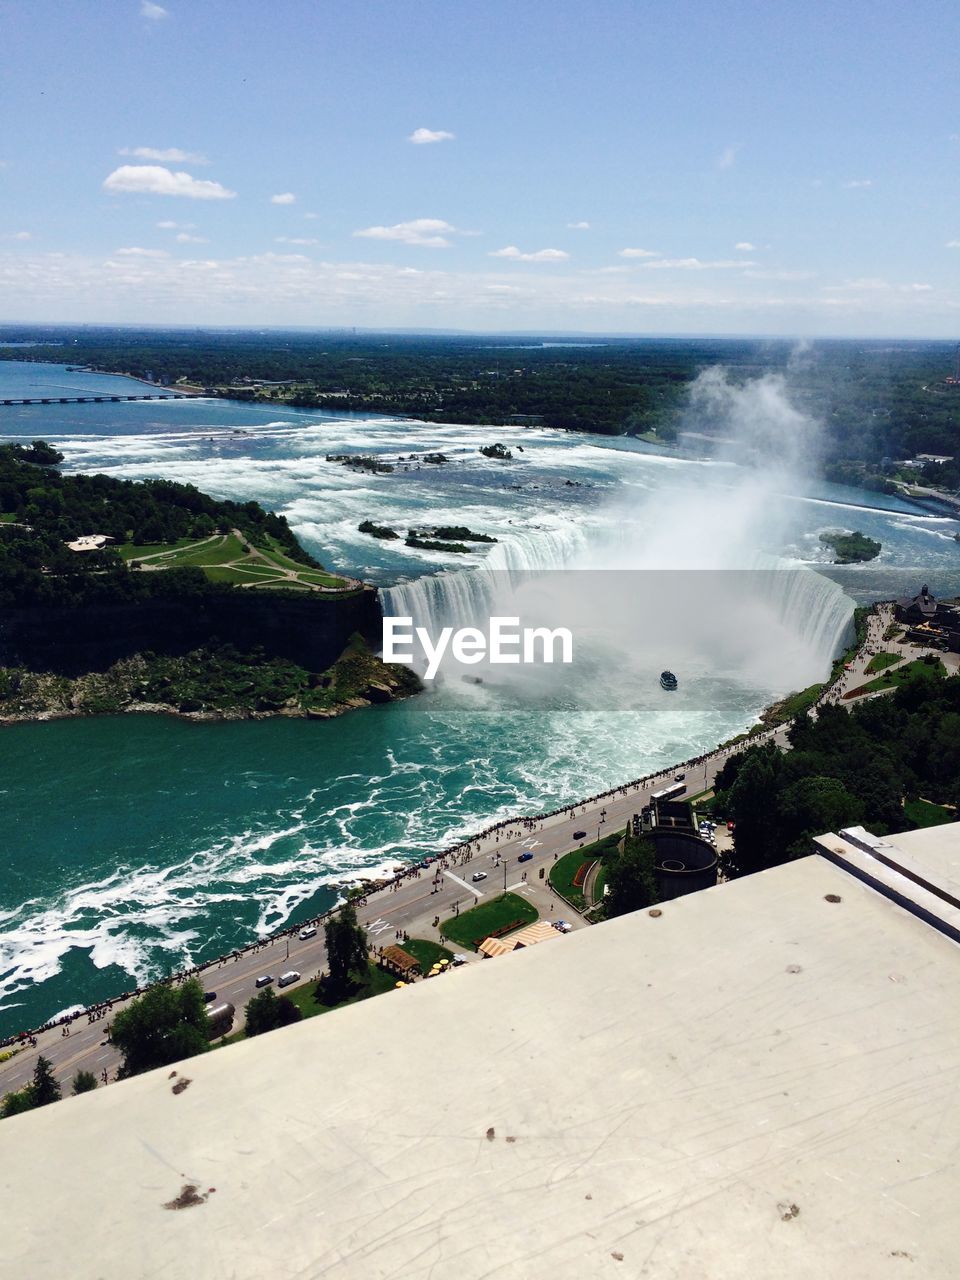 Niagara falls in ontario canada